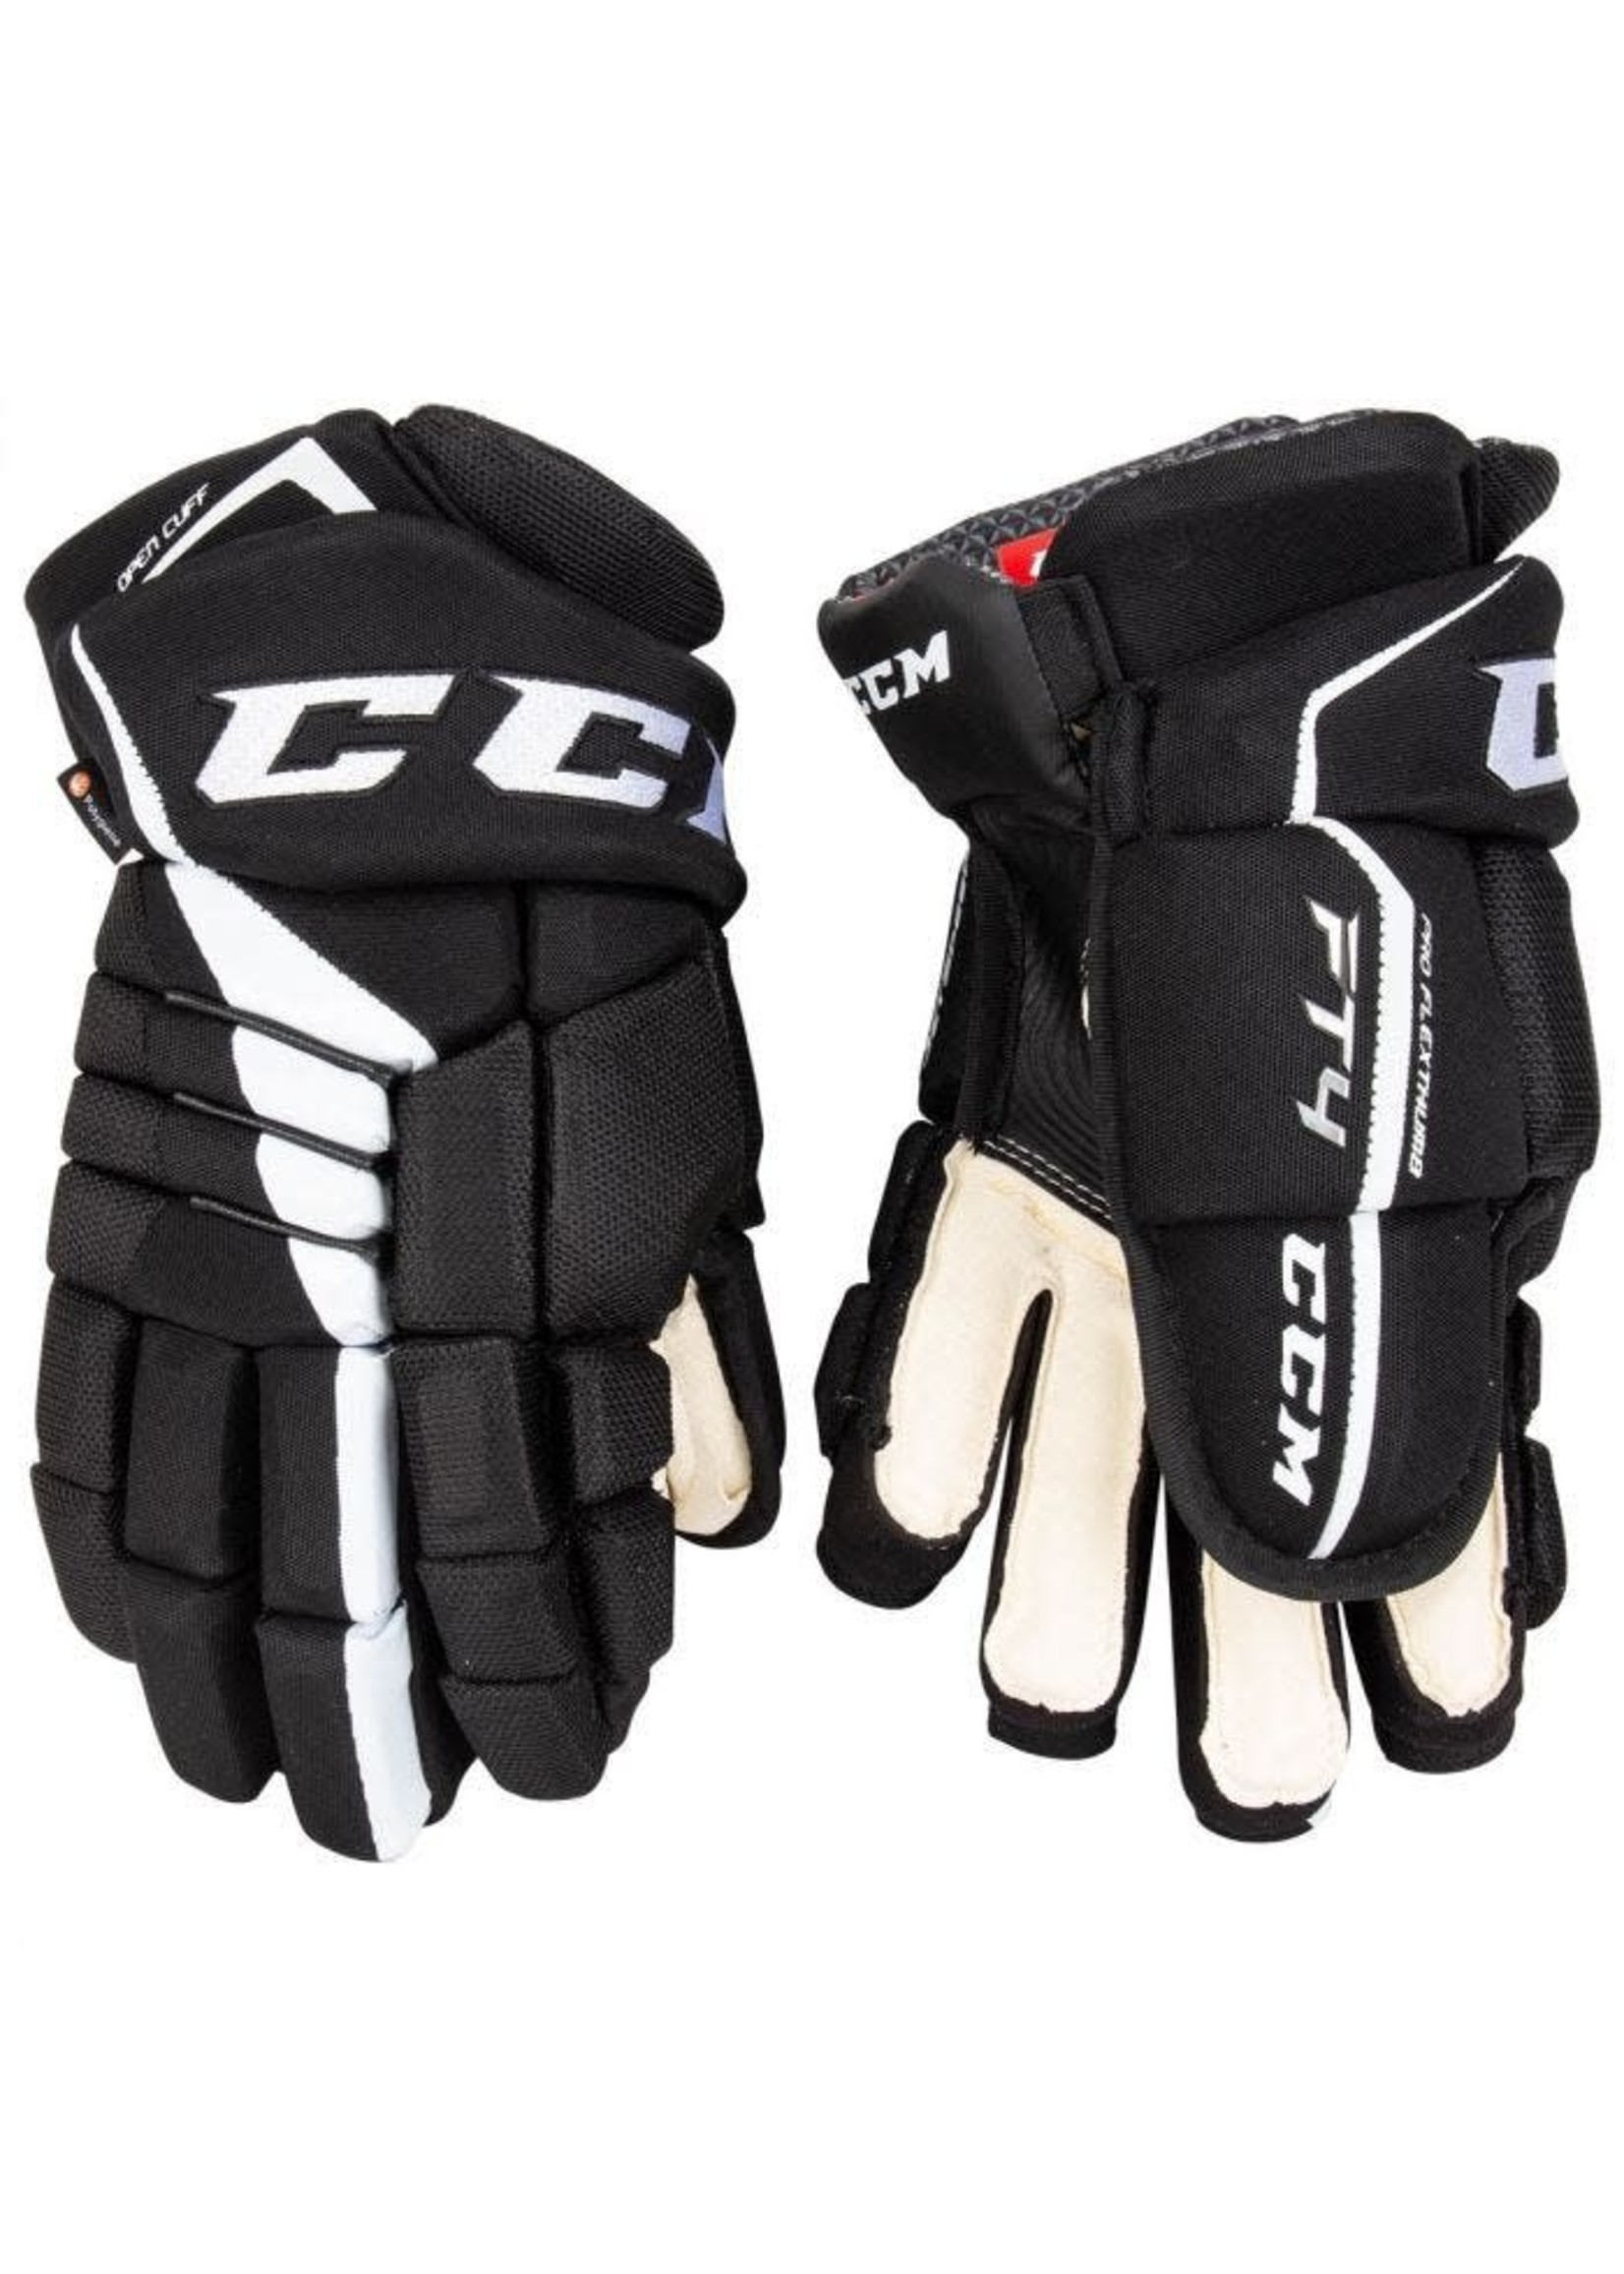 CCM Hockey (USA) CCM Jetspeed FT4 Gloves - Senior